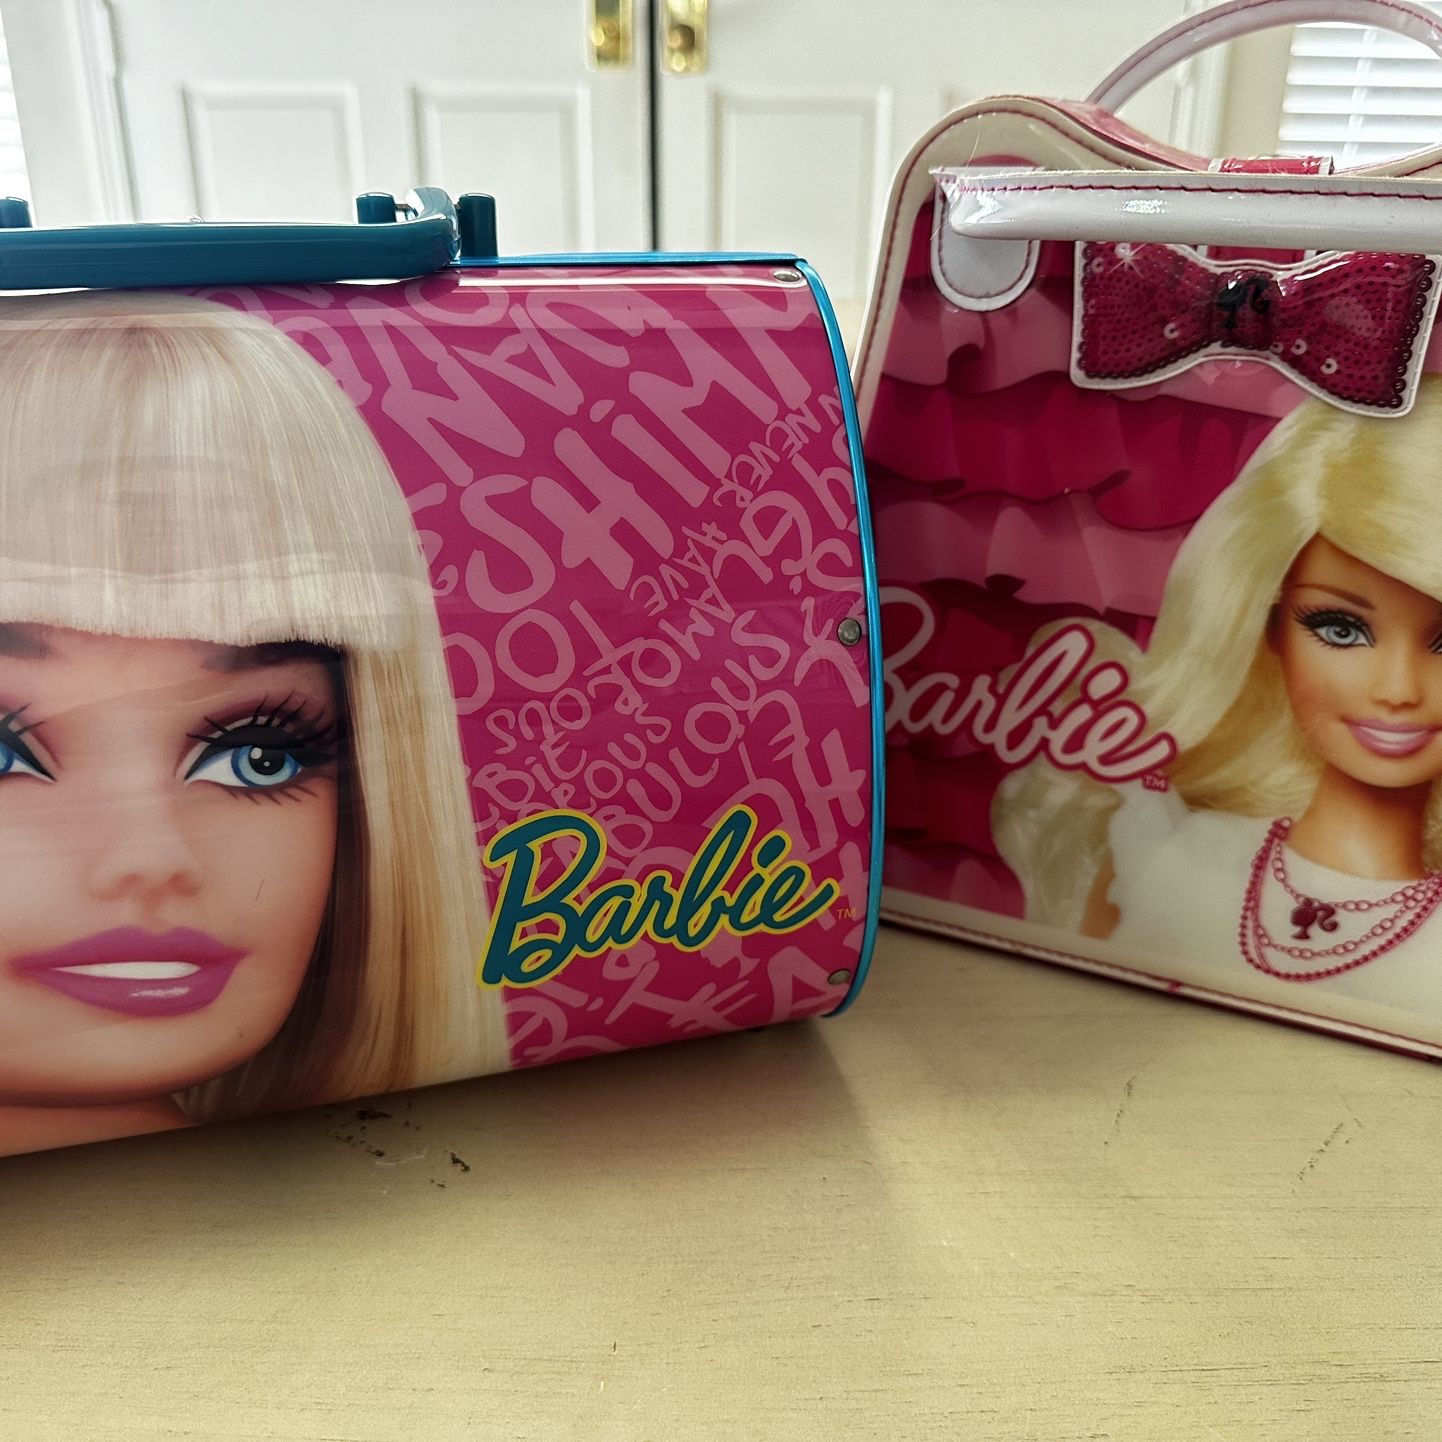 Barbie Cases